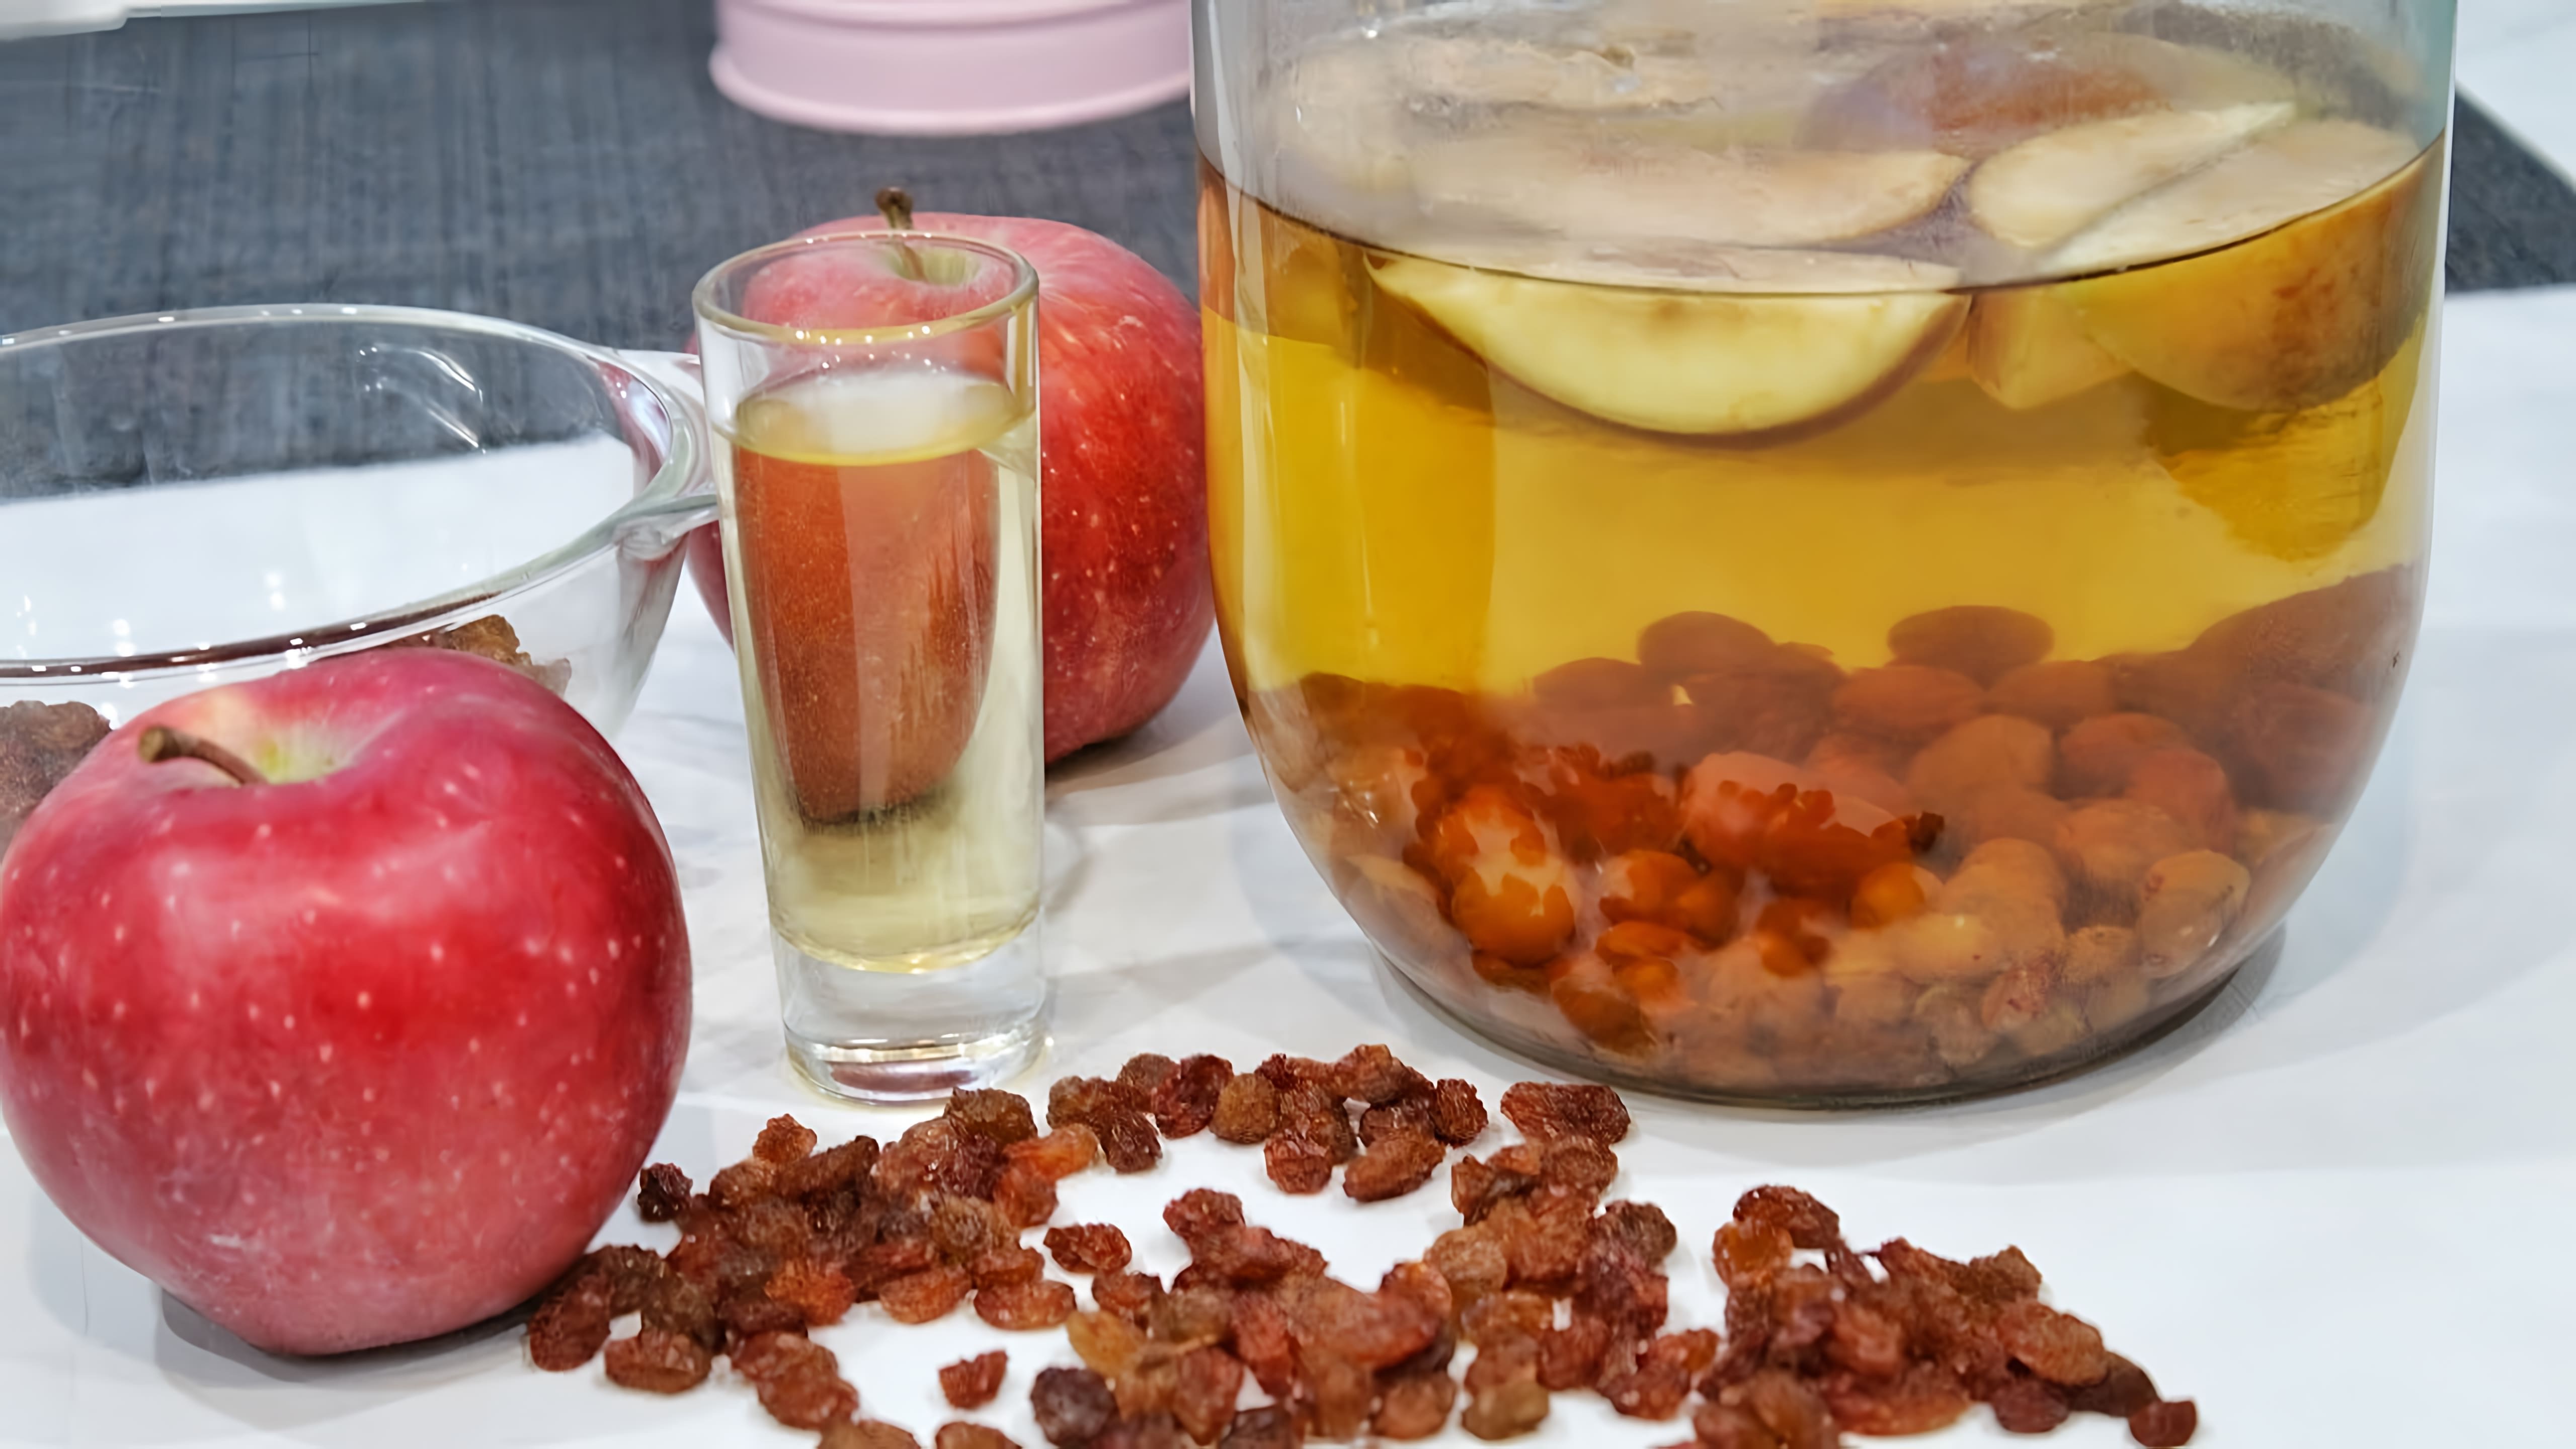 В этом видео демонстрируется процесс приготовления настойки на изюме и яблоках